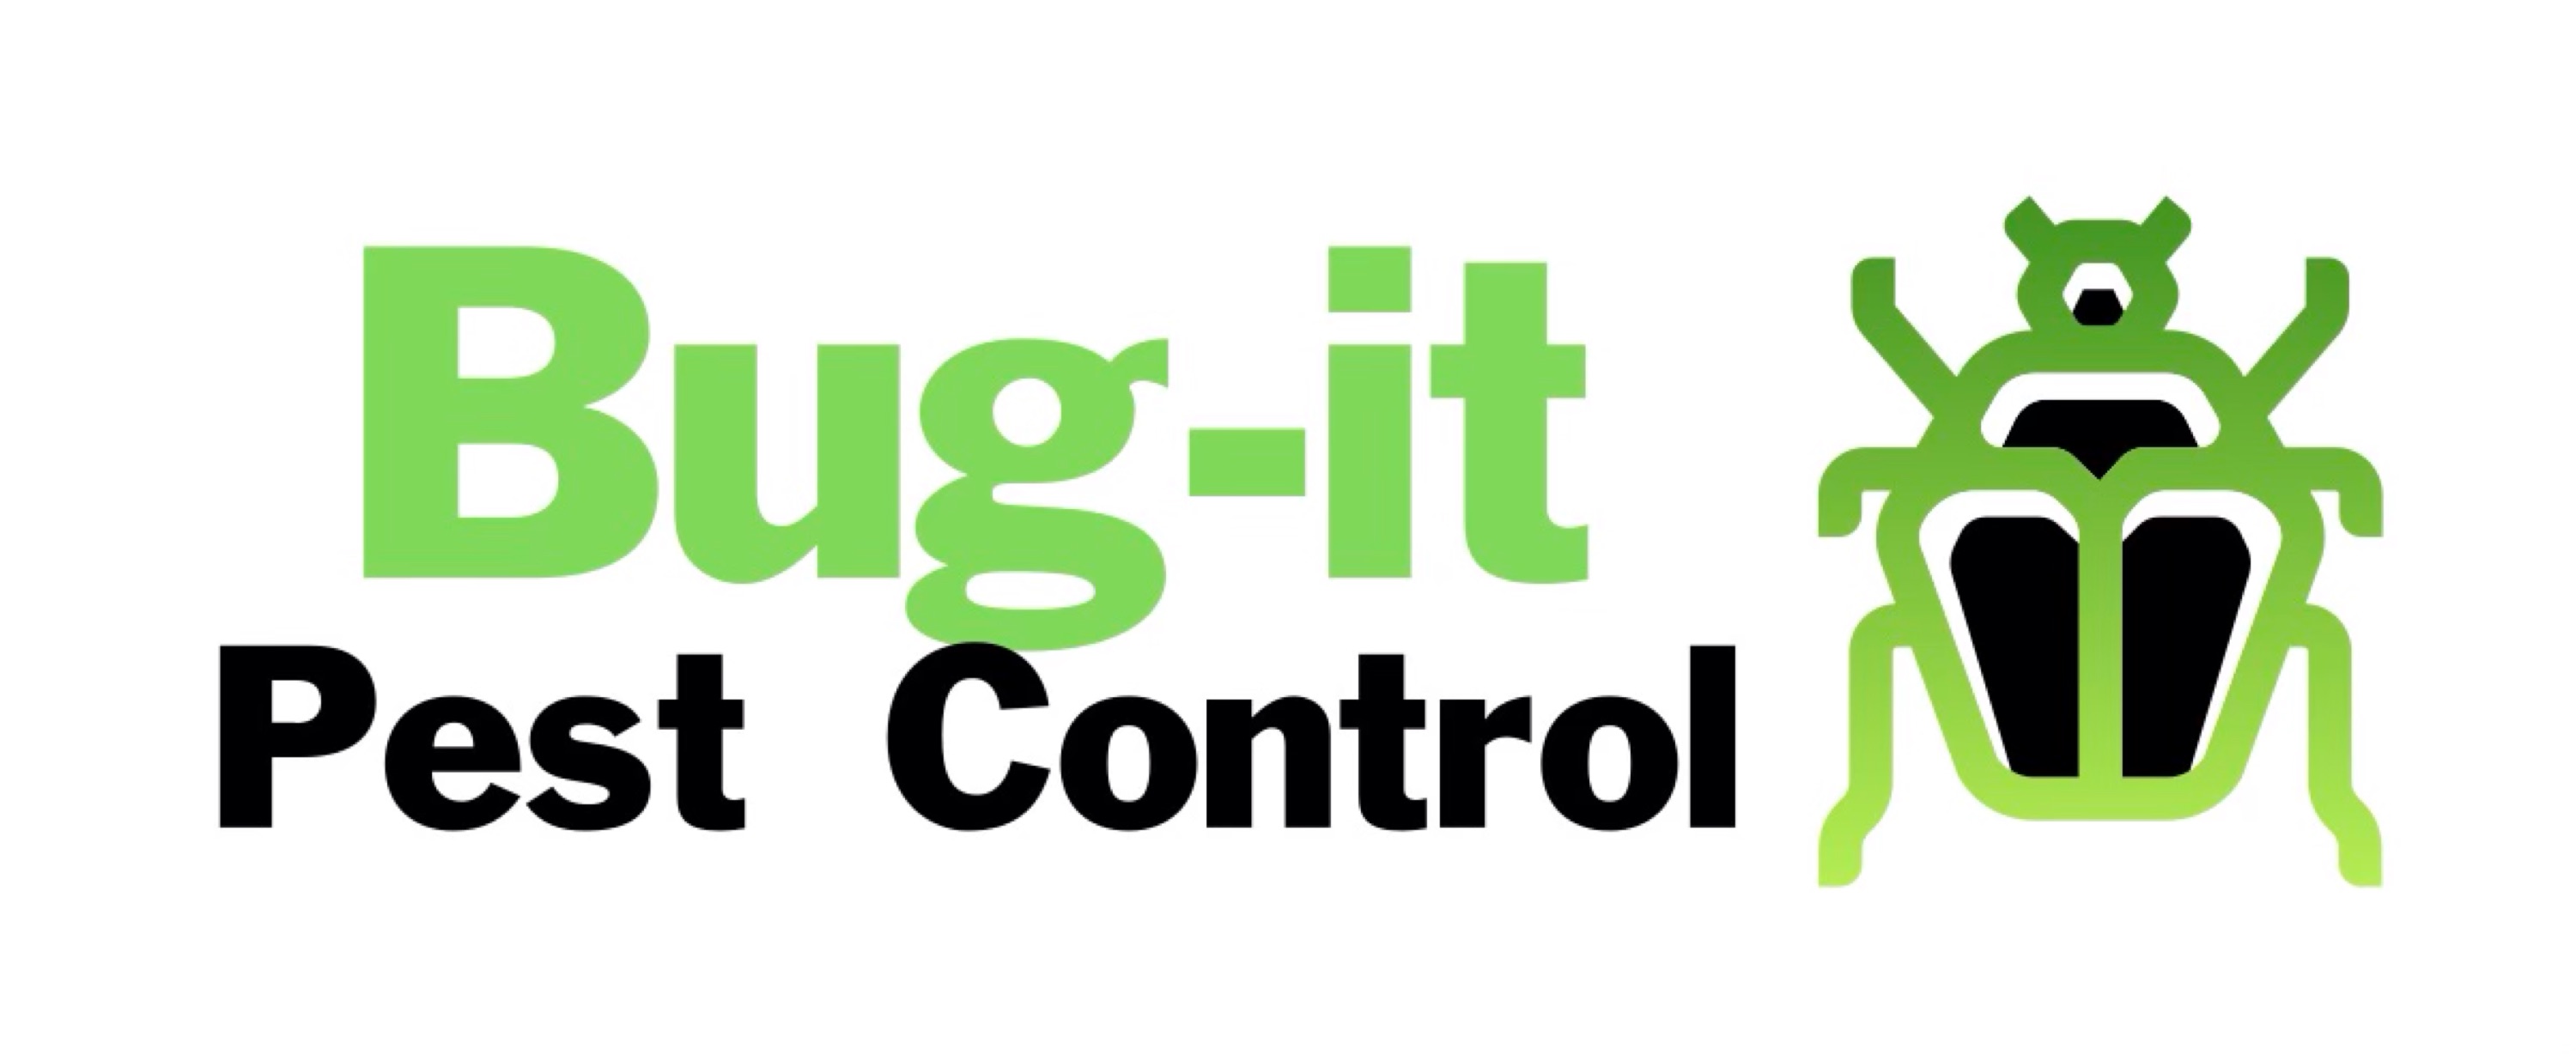 Bug It Pest Control, LLC Logo